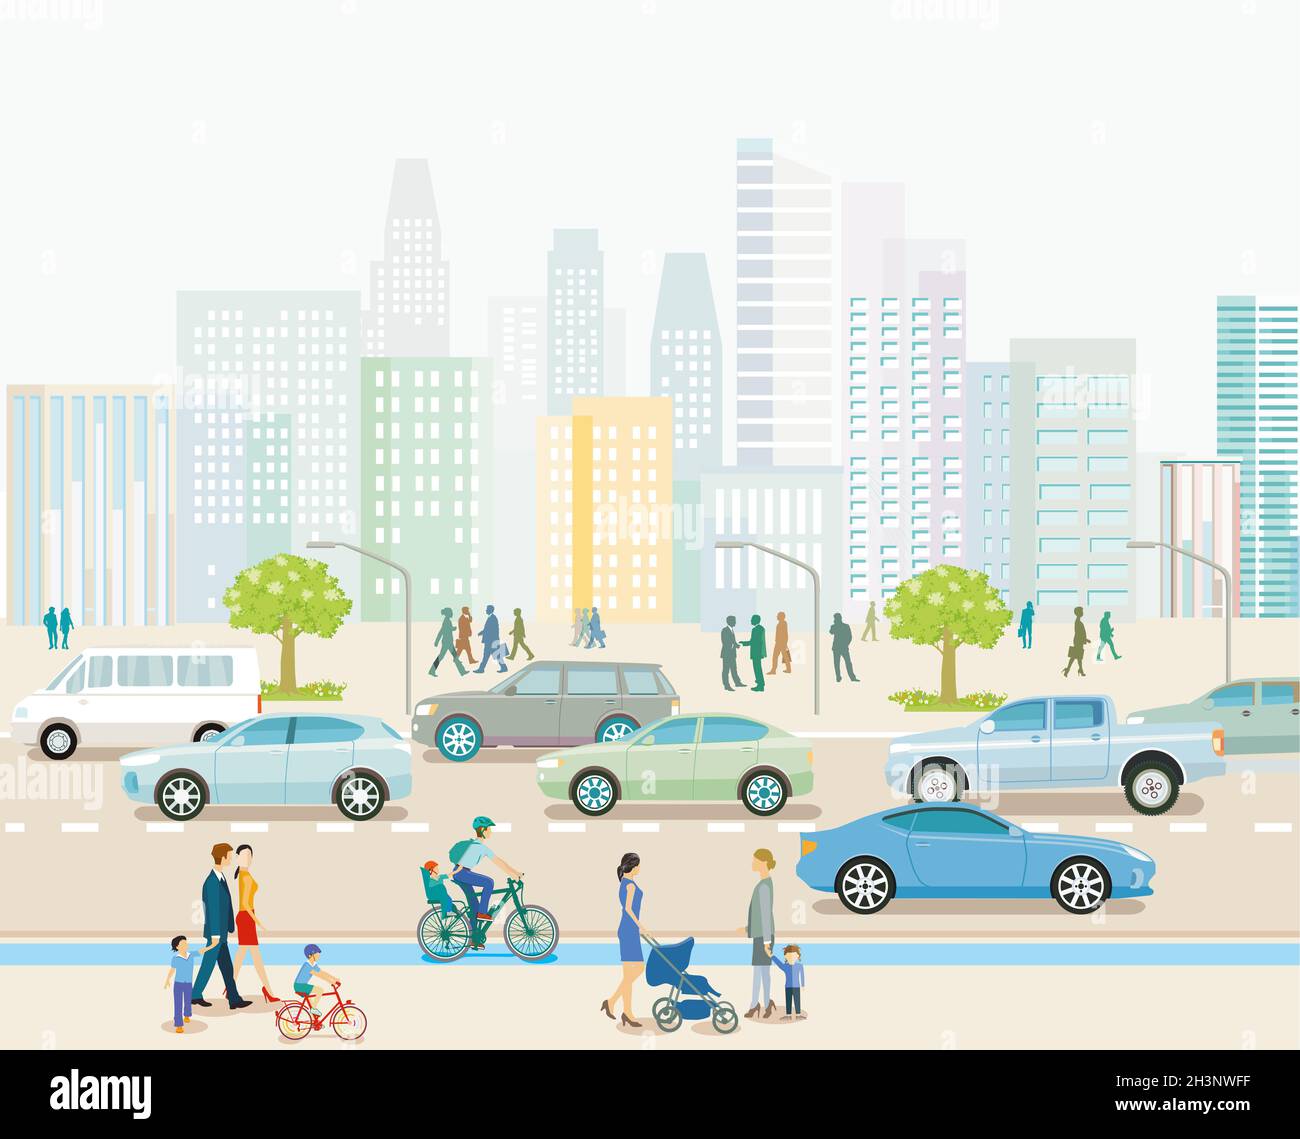 Ville avec circulation routière, immeubles d'appartements et piétons sur le trottoir, illustration Banque D'Images